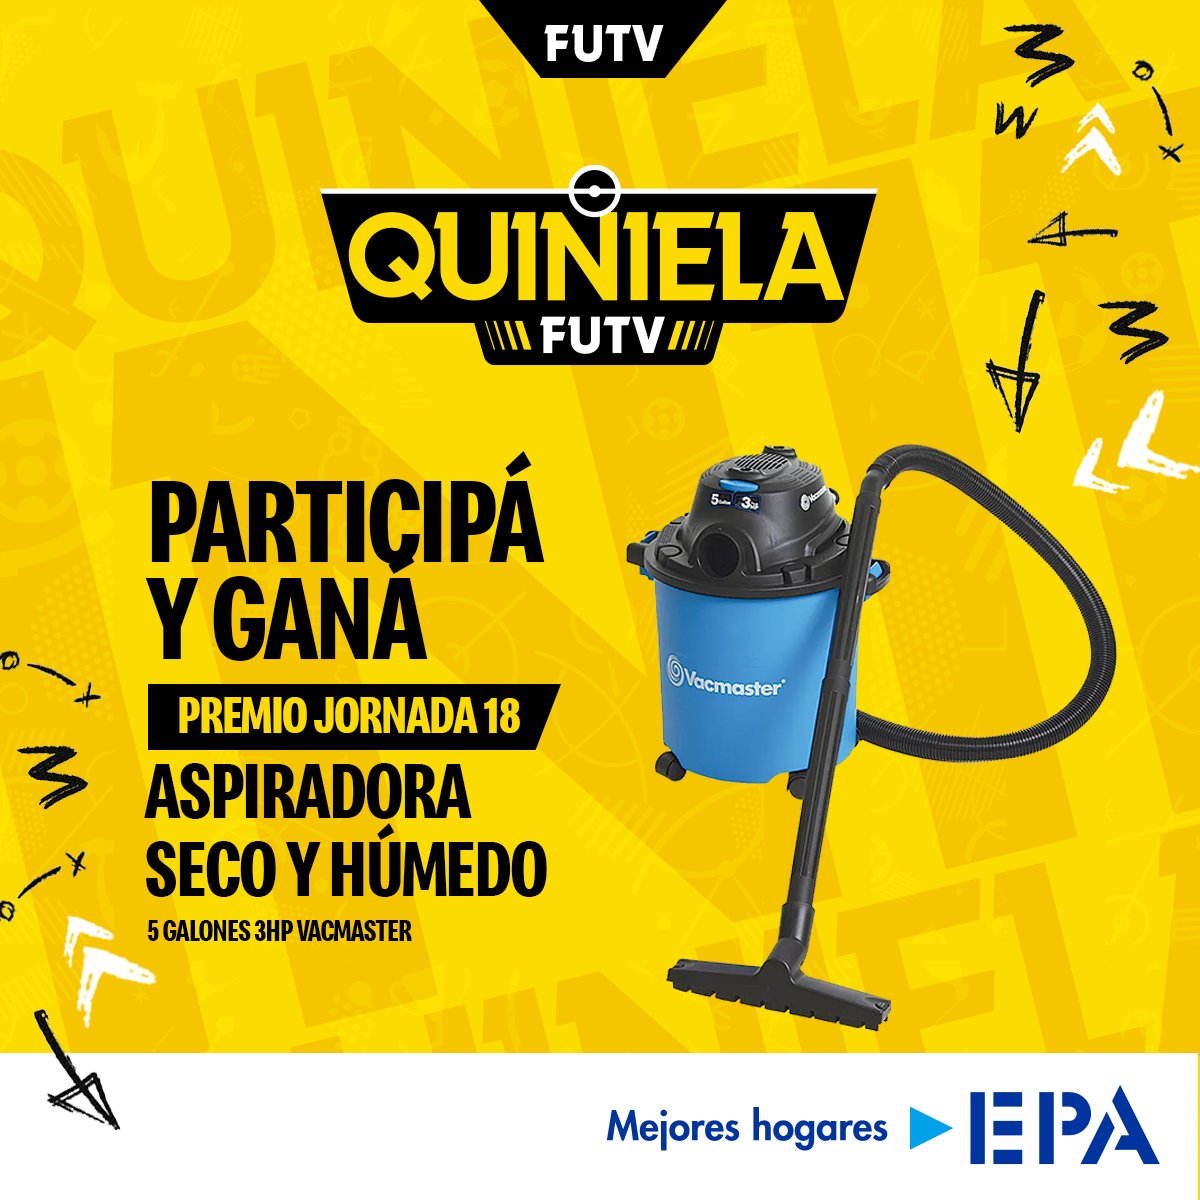 Esta aspiradora cortesía de EPA es el premio que se llevará el ganador de la jornada 18 de la #QuinielaFUTV.

🔗 quiniela.futvcr.com